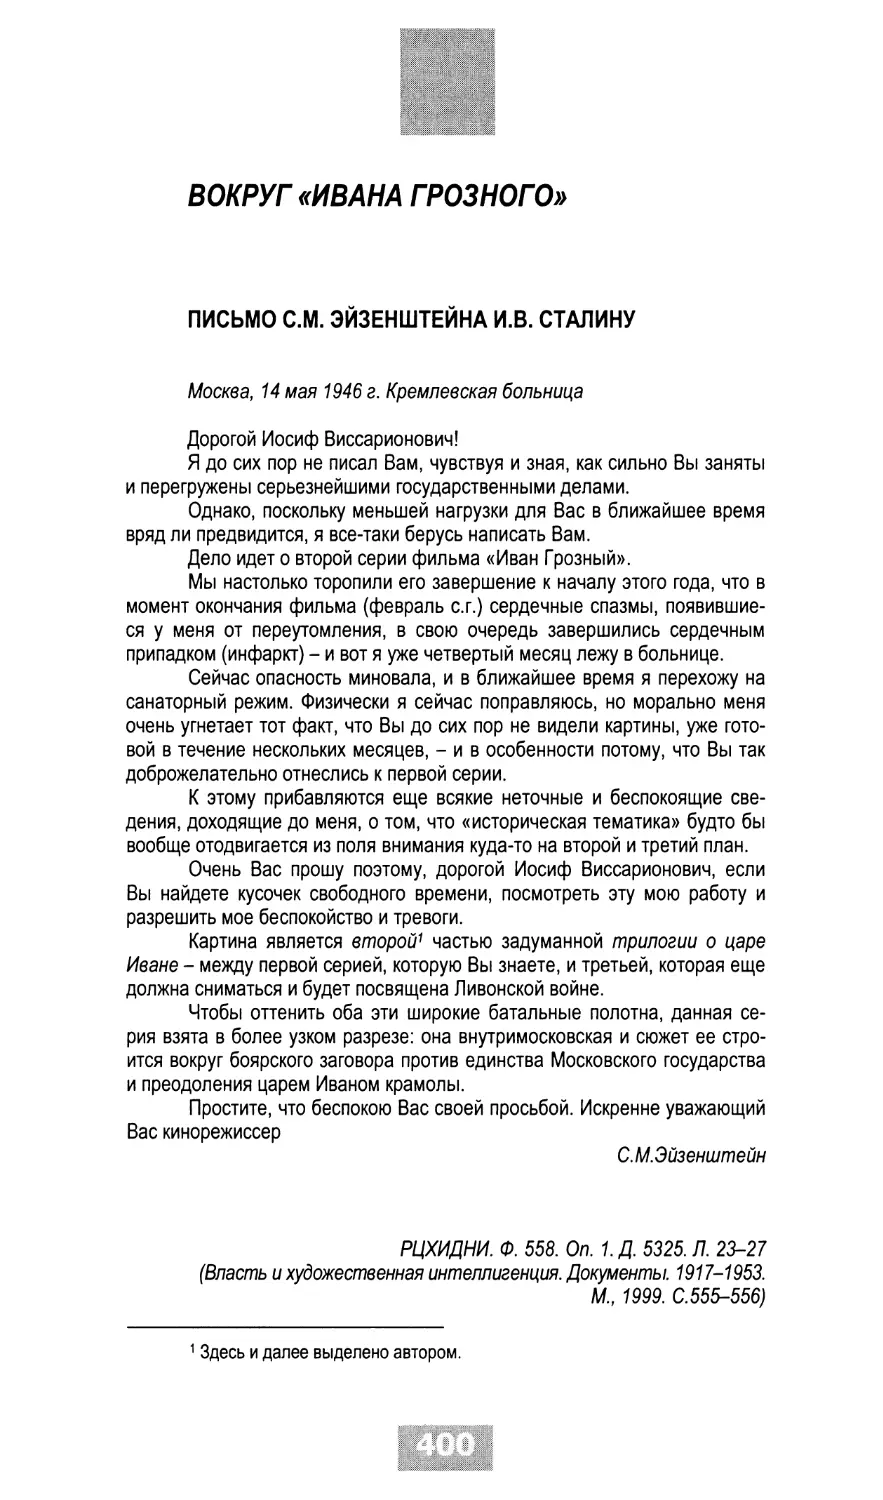 ВОКРУГ «ИВАНА ГРОЗНОГО»
Письмо С.М.Эйзенштейна И.В.Сталину, 14.05.1946